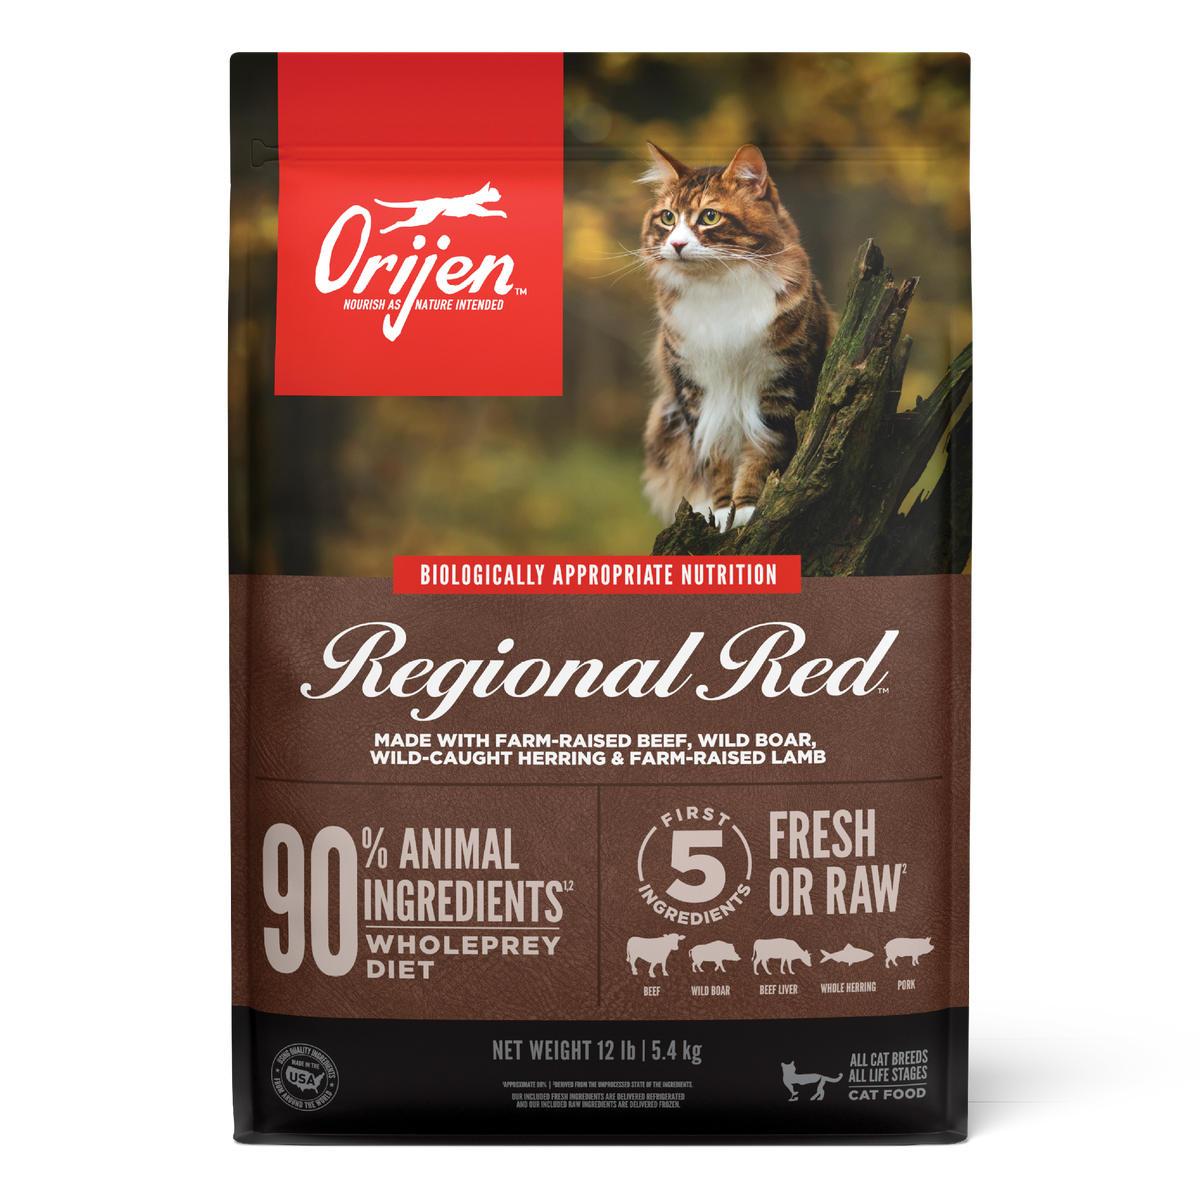 Orijen's Dry Regional Red Cat Food